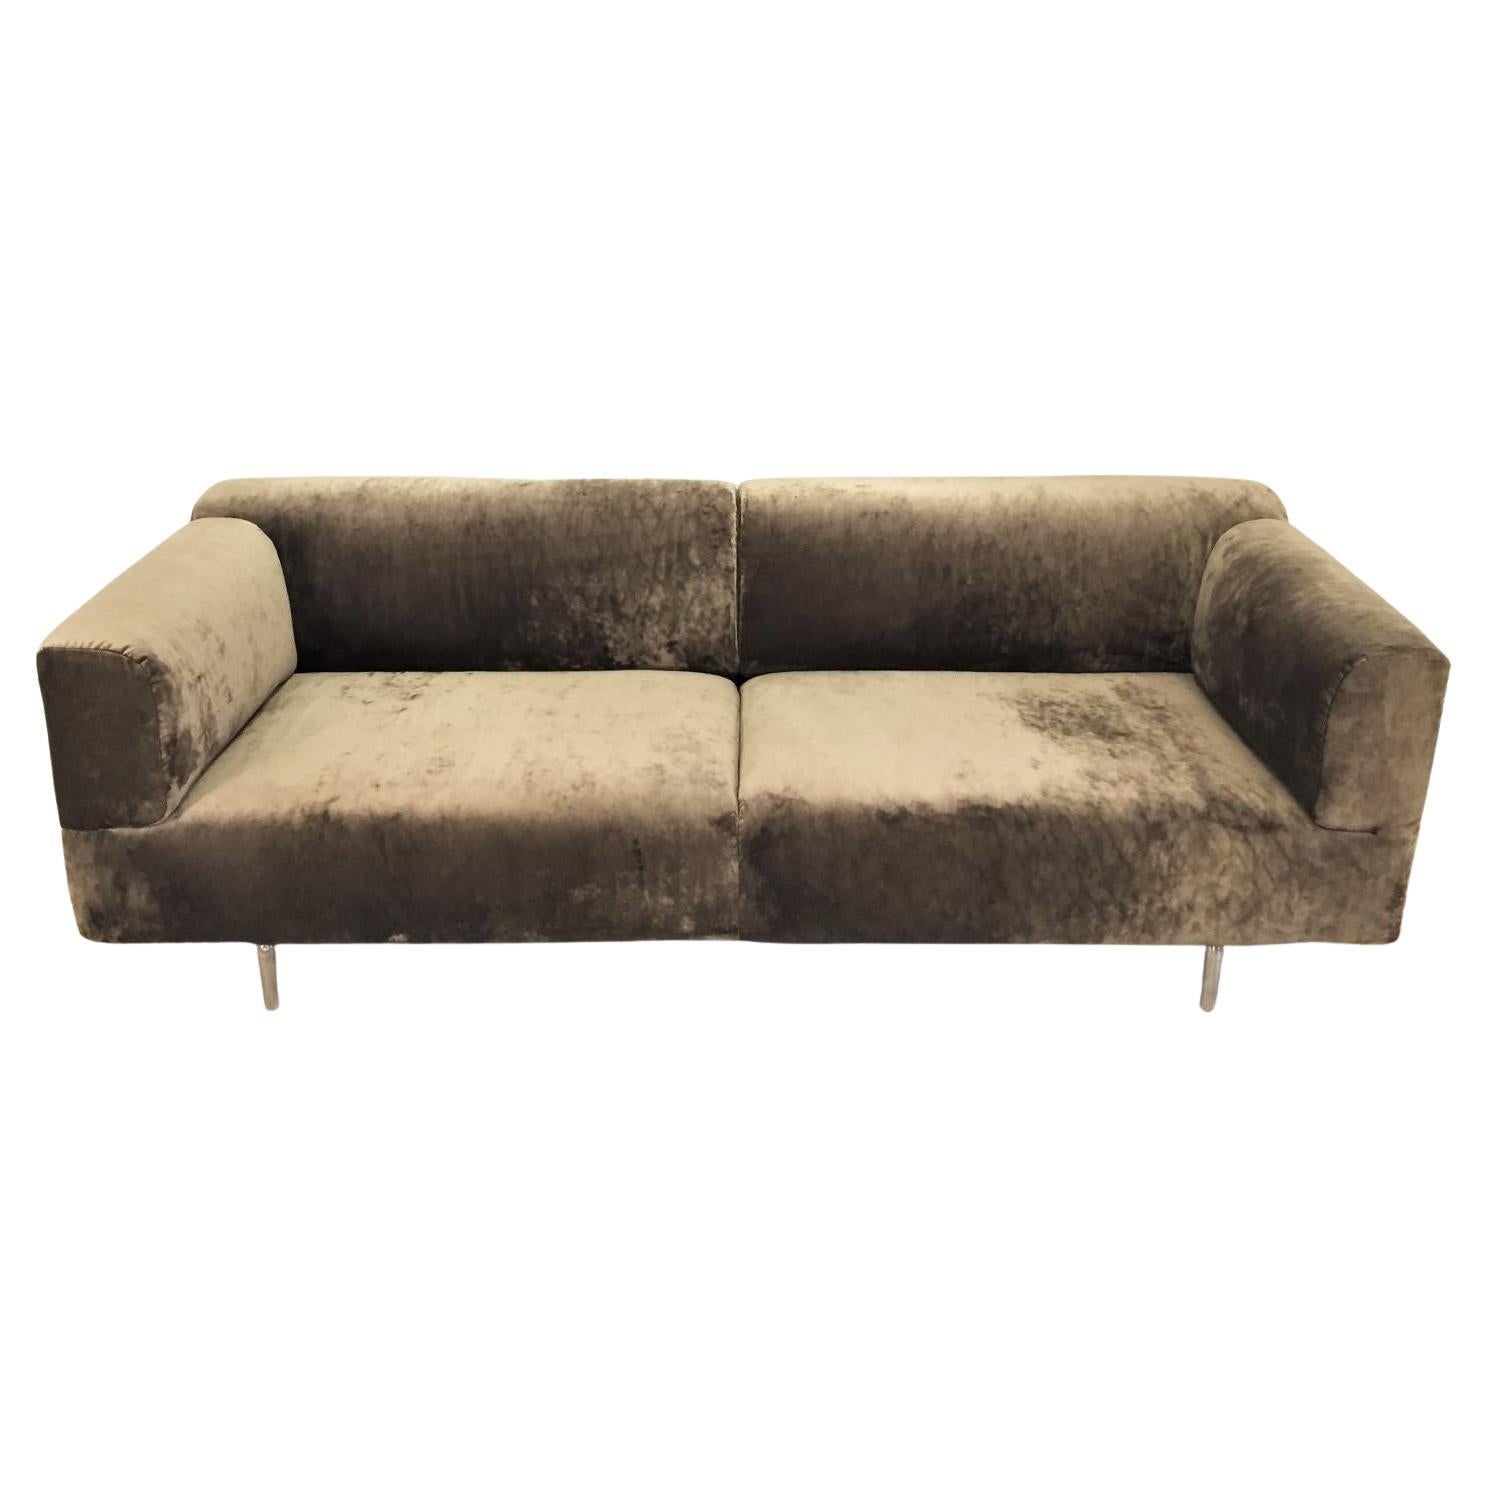 MET-Sofa, entworfen von Piero Lissoni für Cassina